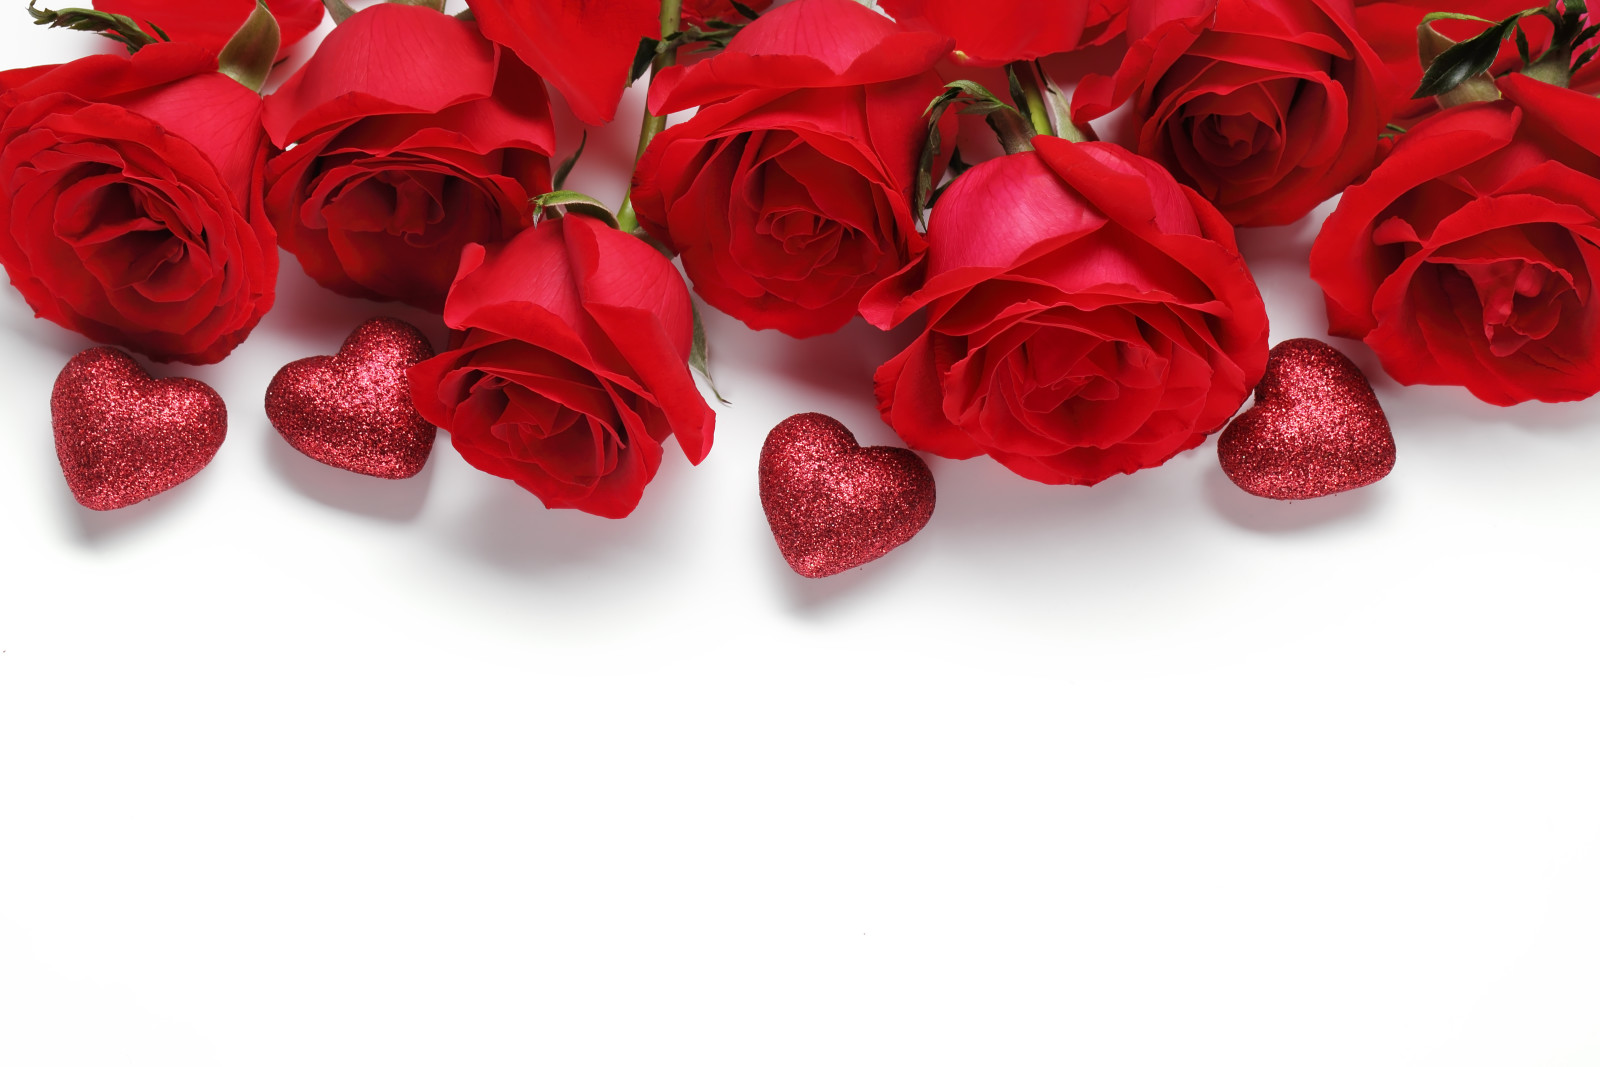 yêu và quý, lãng mạn, ngày lễ tình nhân, hoa hồng, tim